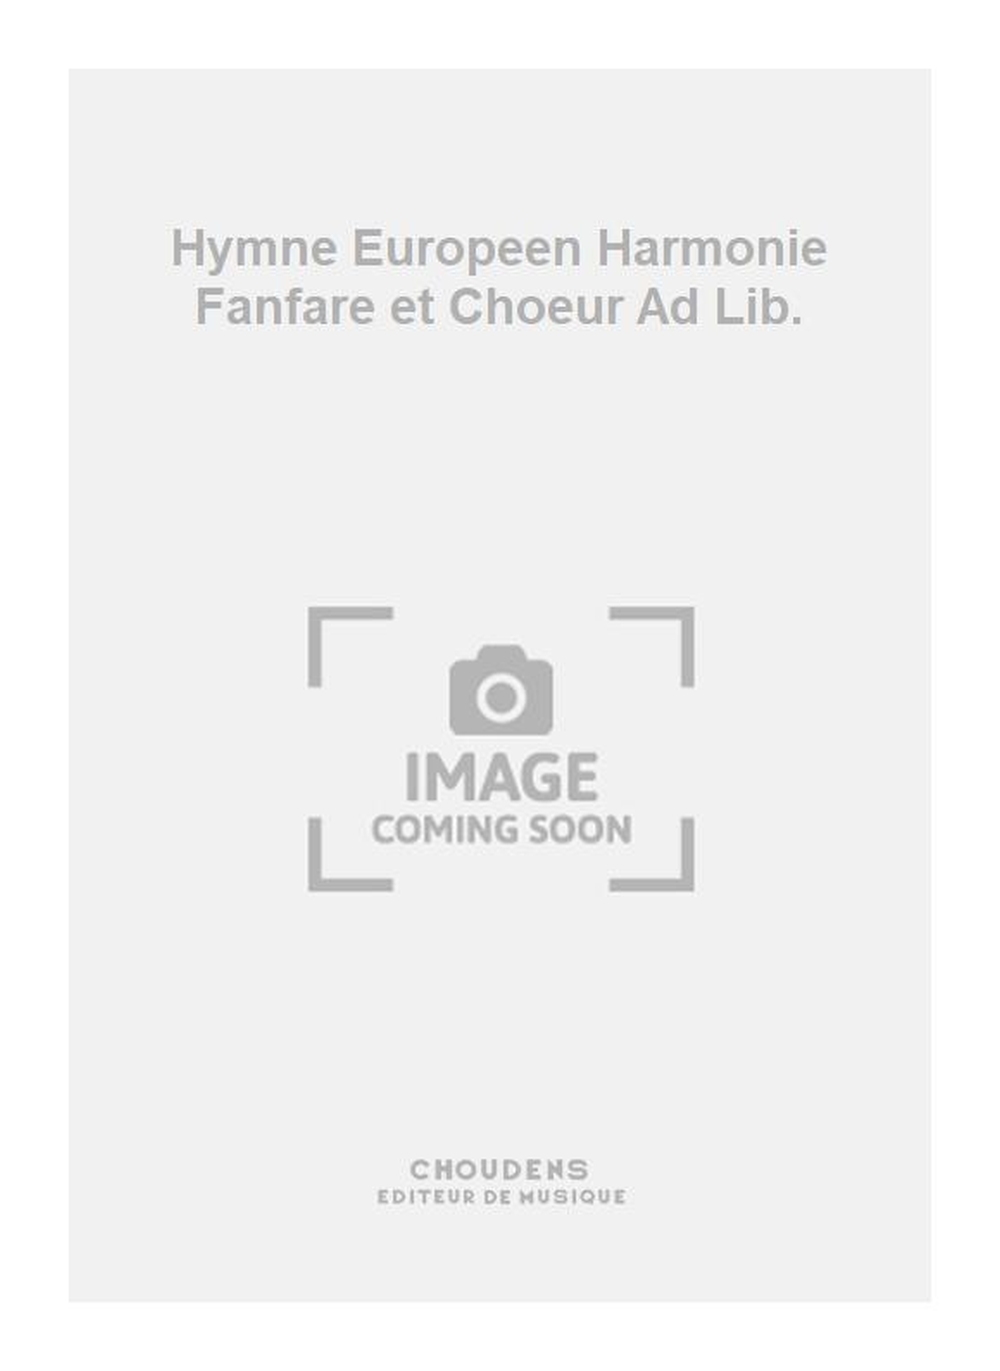 Ludwig van Beethoven: Hymne Europeen Harmonie Fanfare et Choeur Ad Lib.